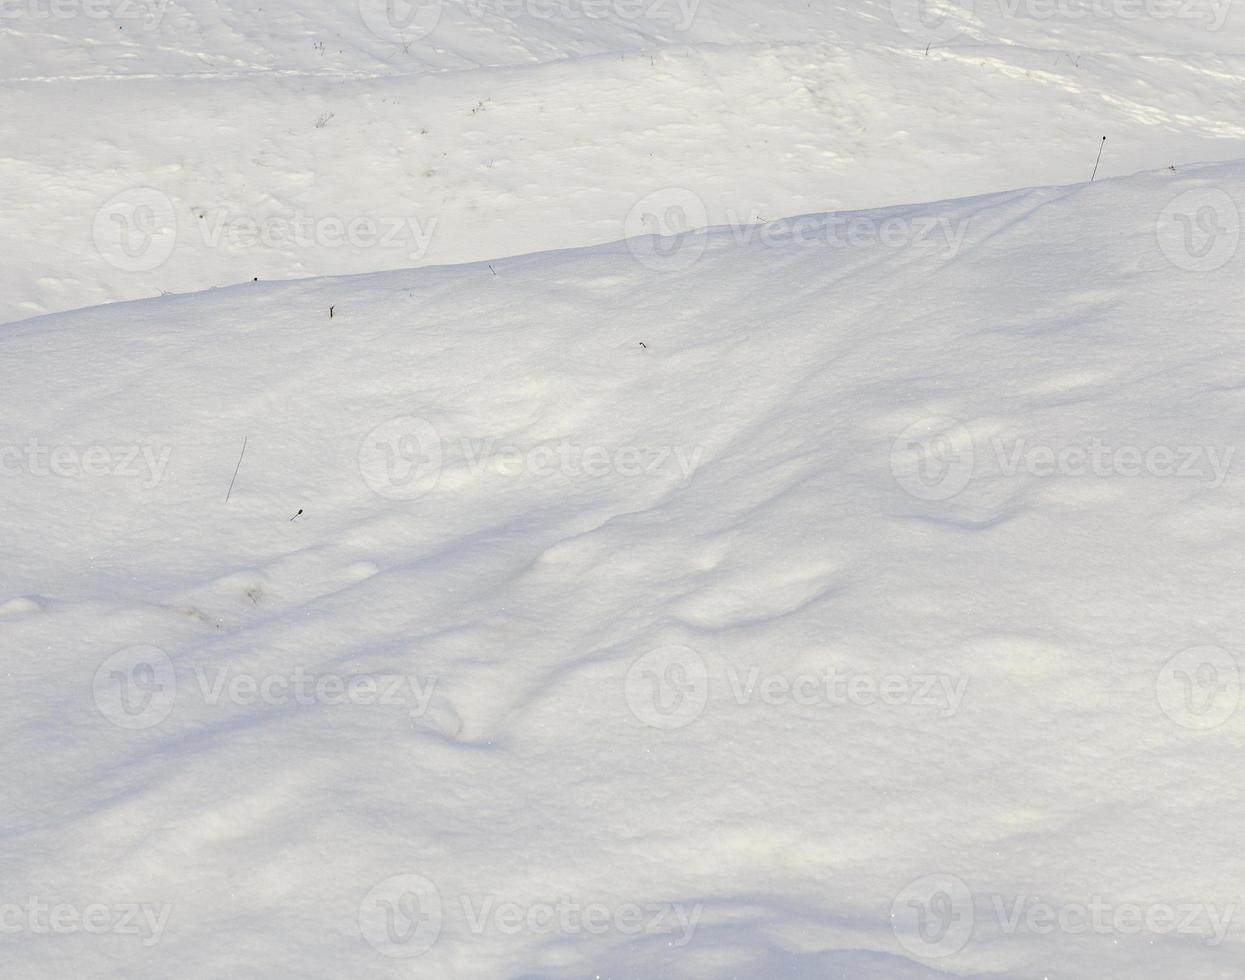 nevicate nella stagione invernale e neve bianca soffice e fredda foto